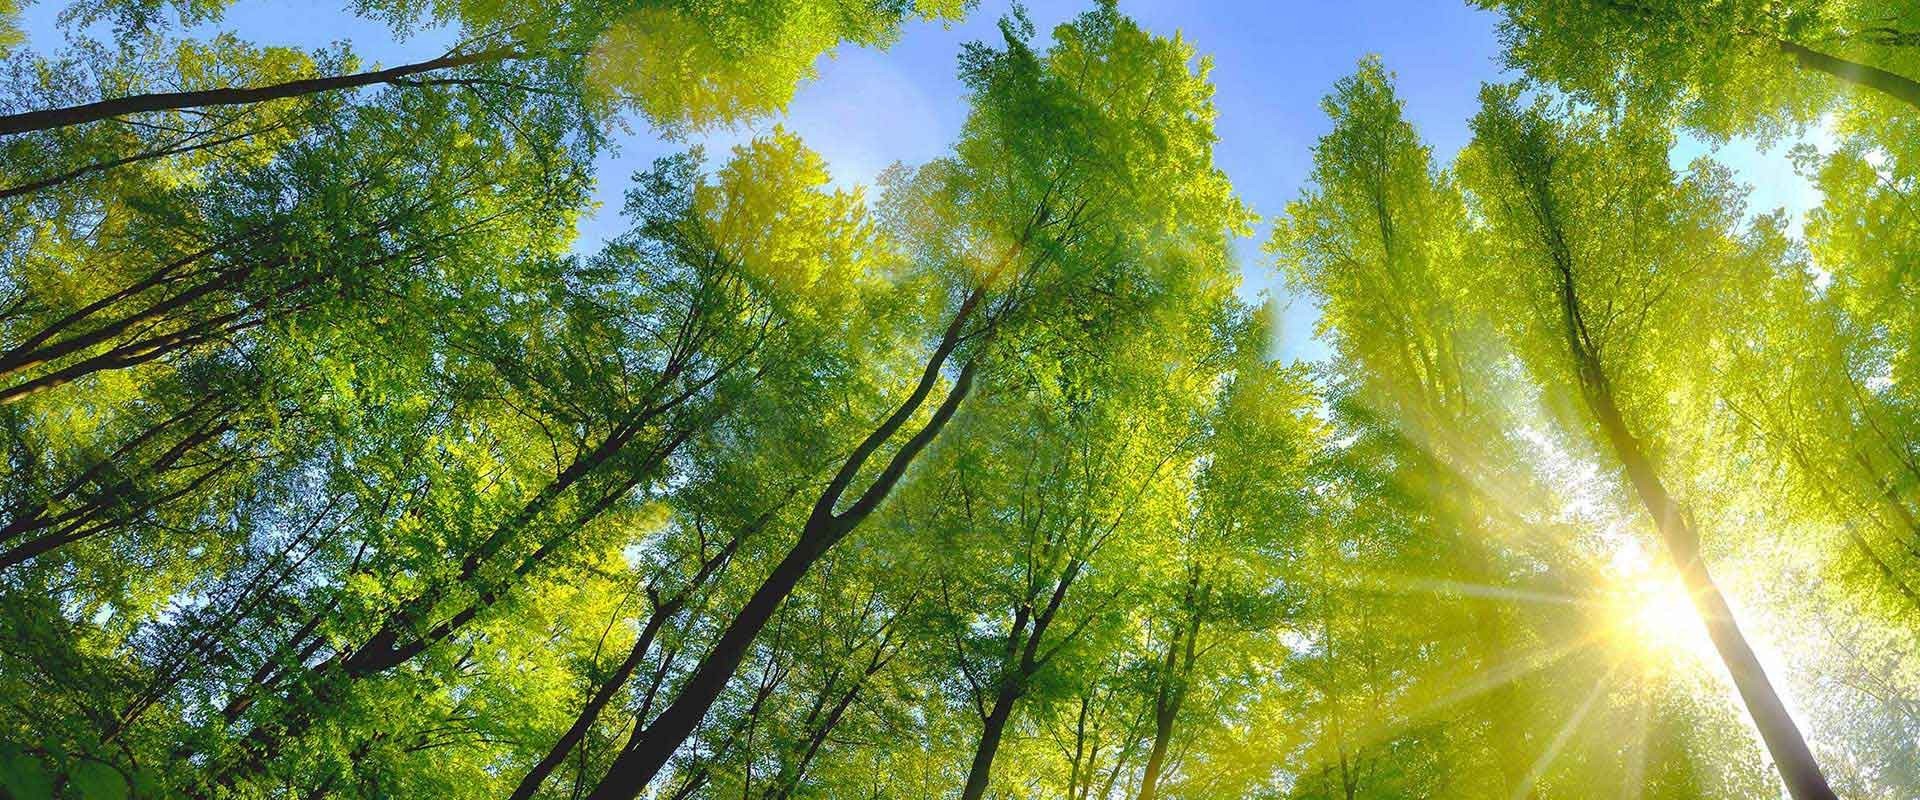  Yukarıda güneş ışığı ve mavi gökyüzünde yeşil yaprakları ile yaprak döken orman